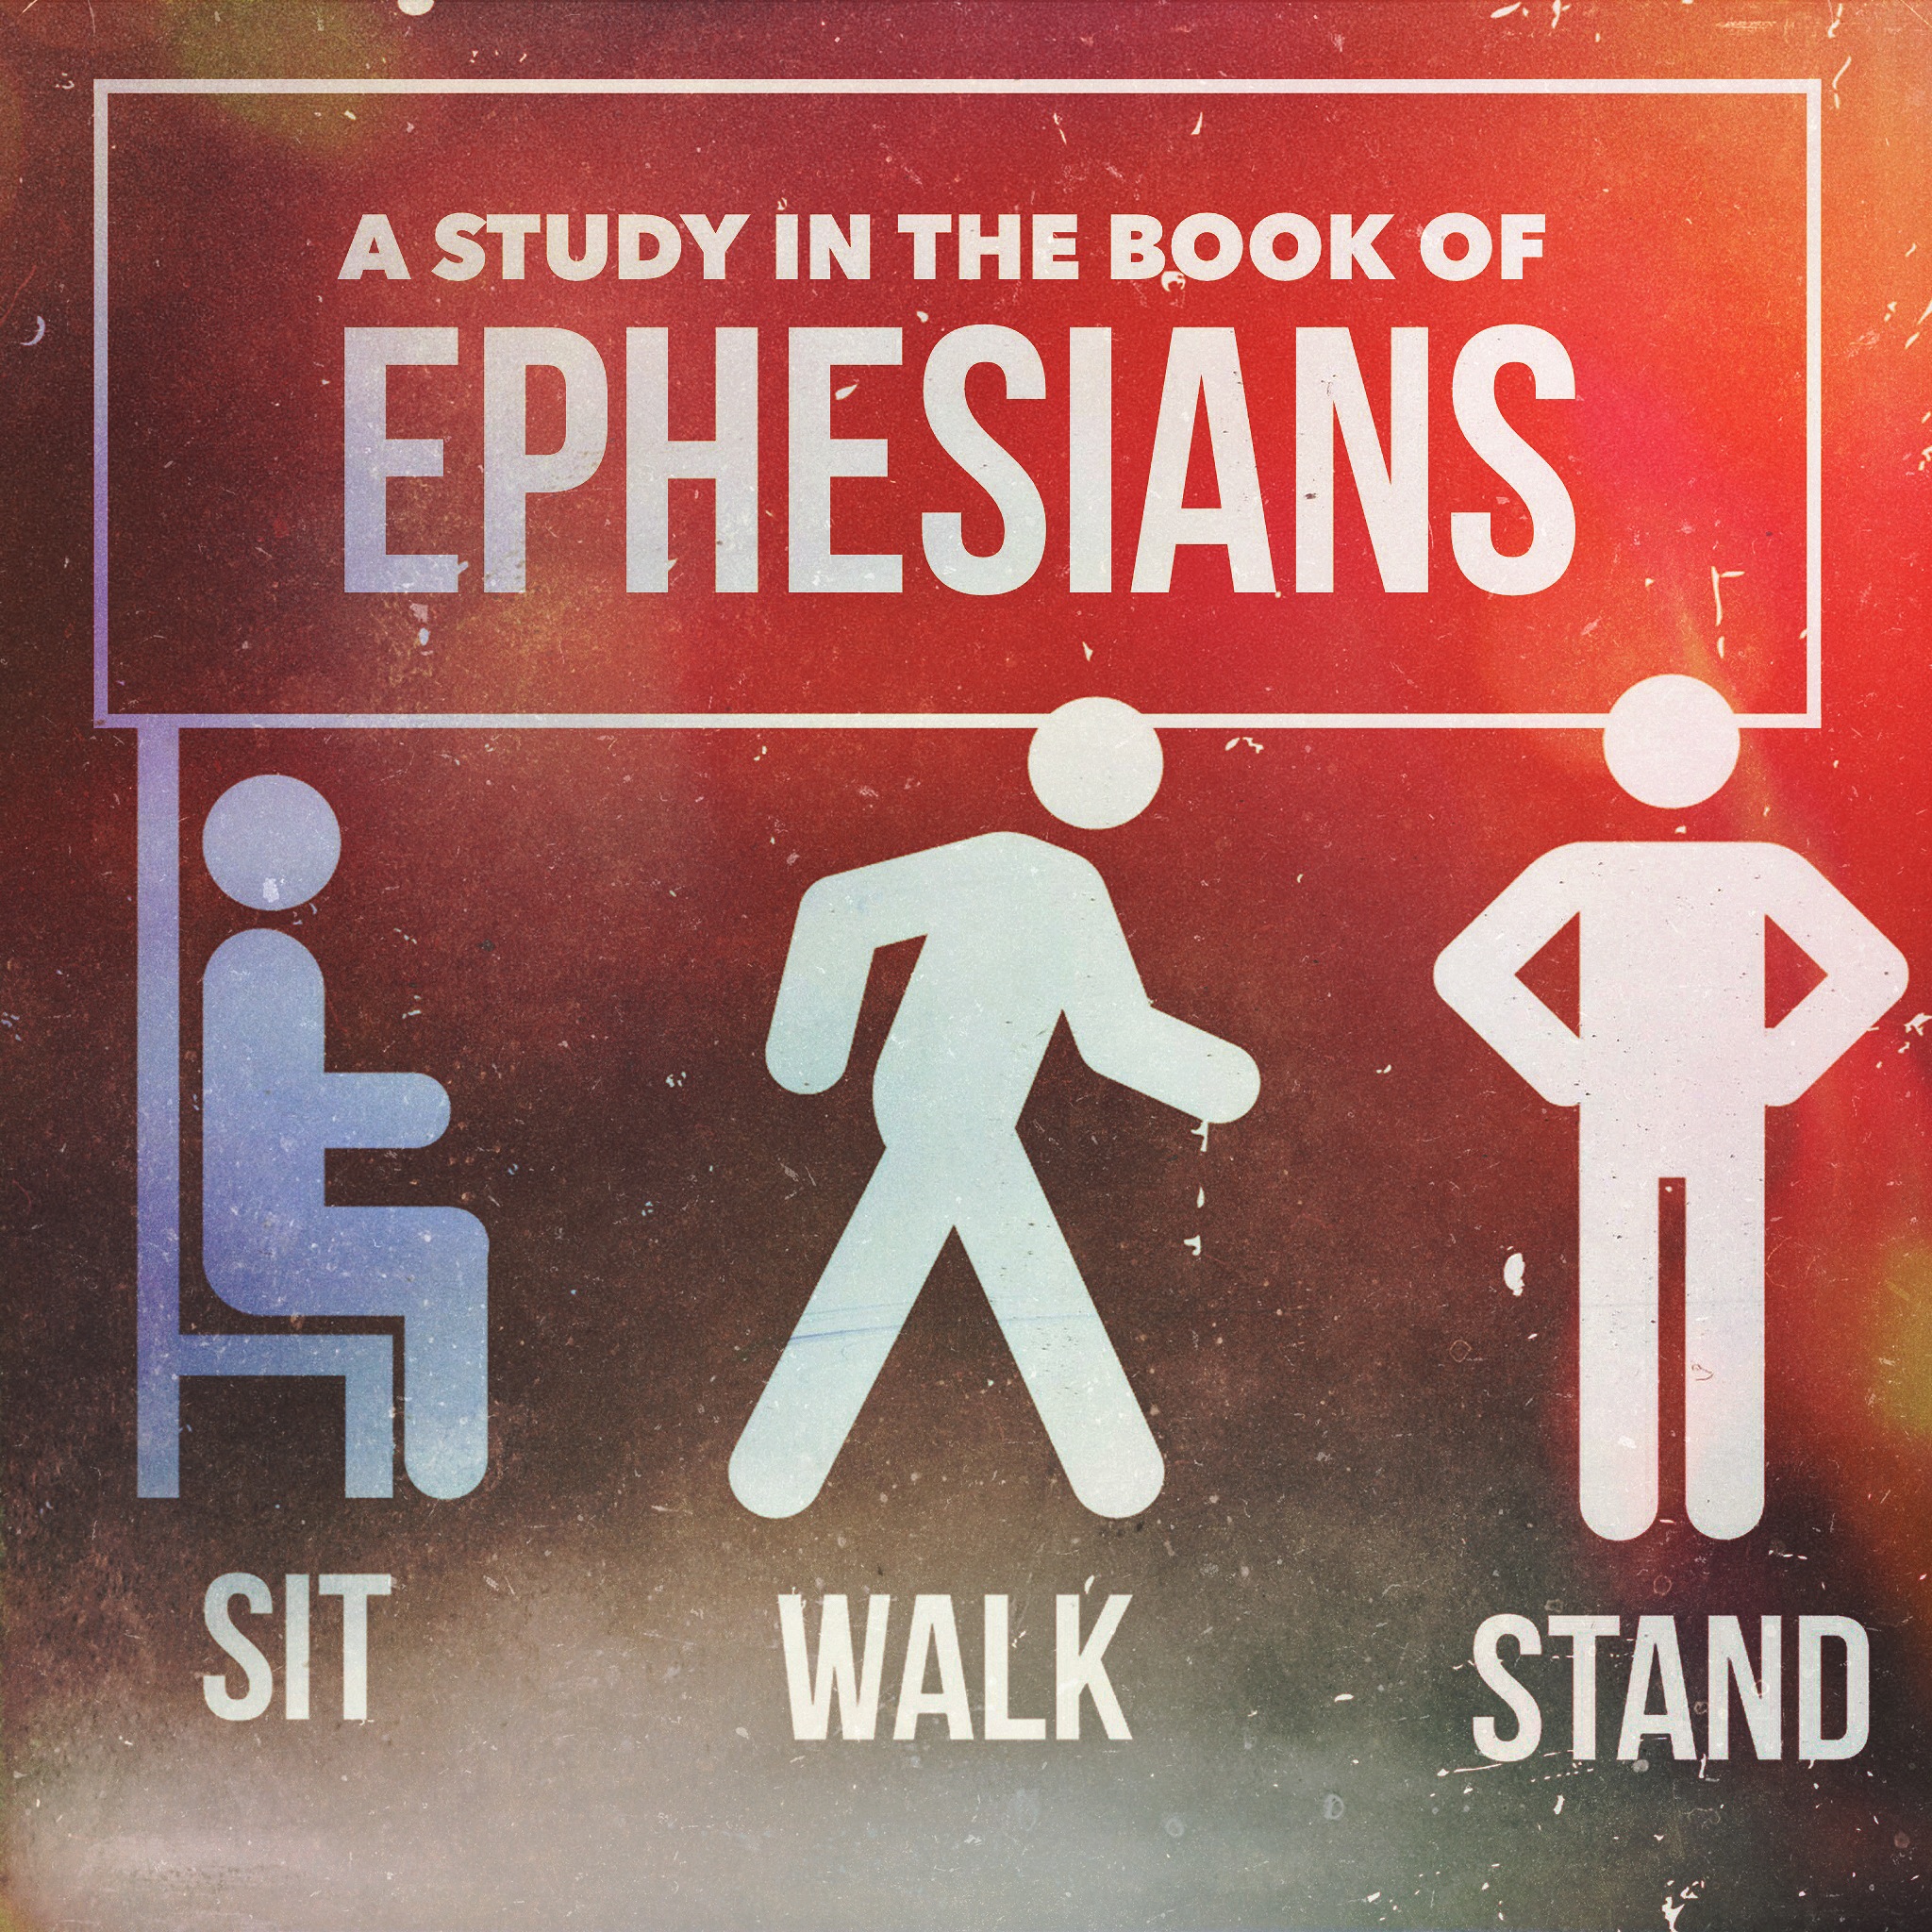 Ephesians 5:1-20 | Jesus our Role Model